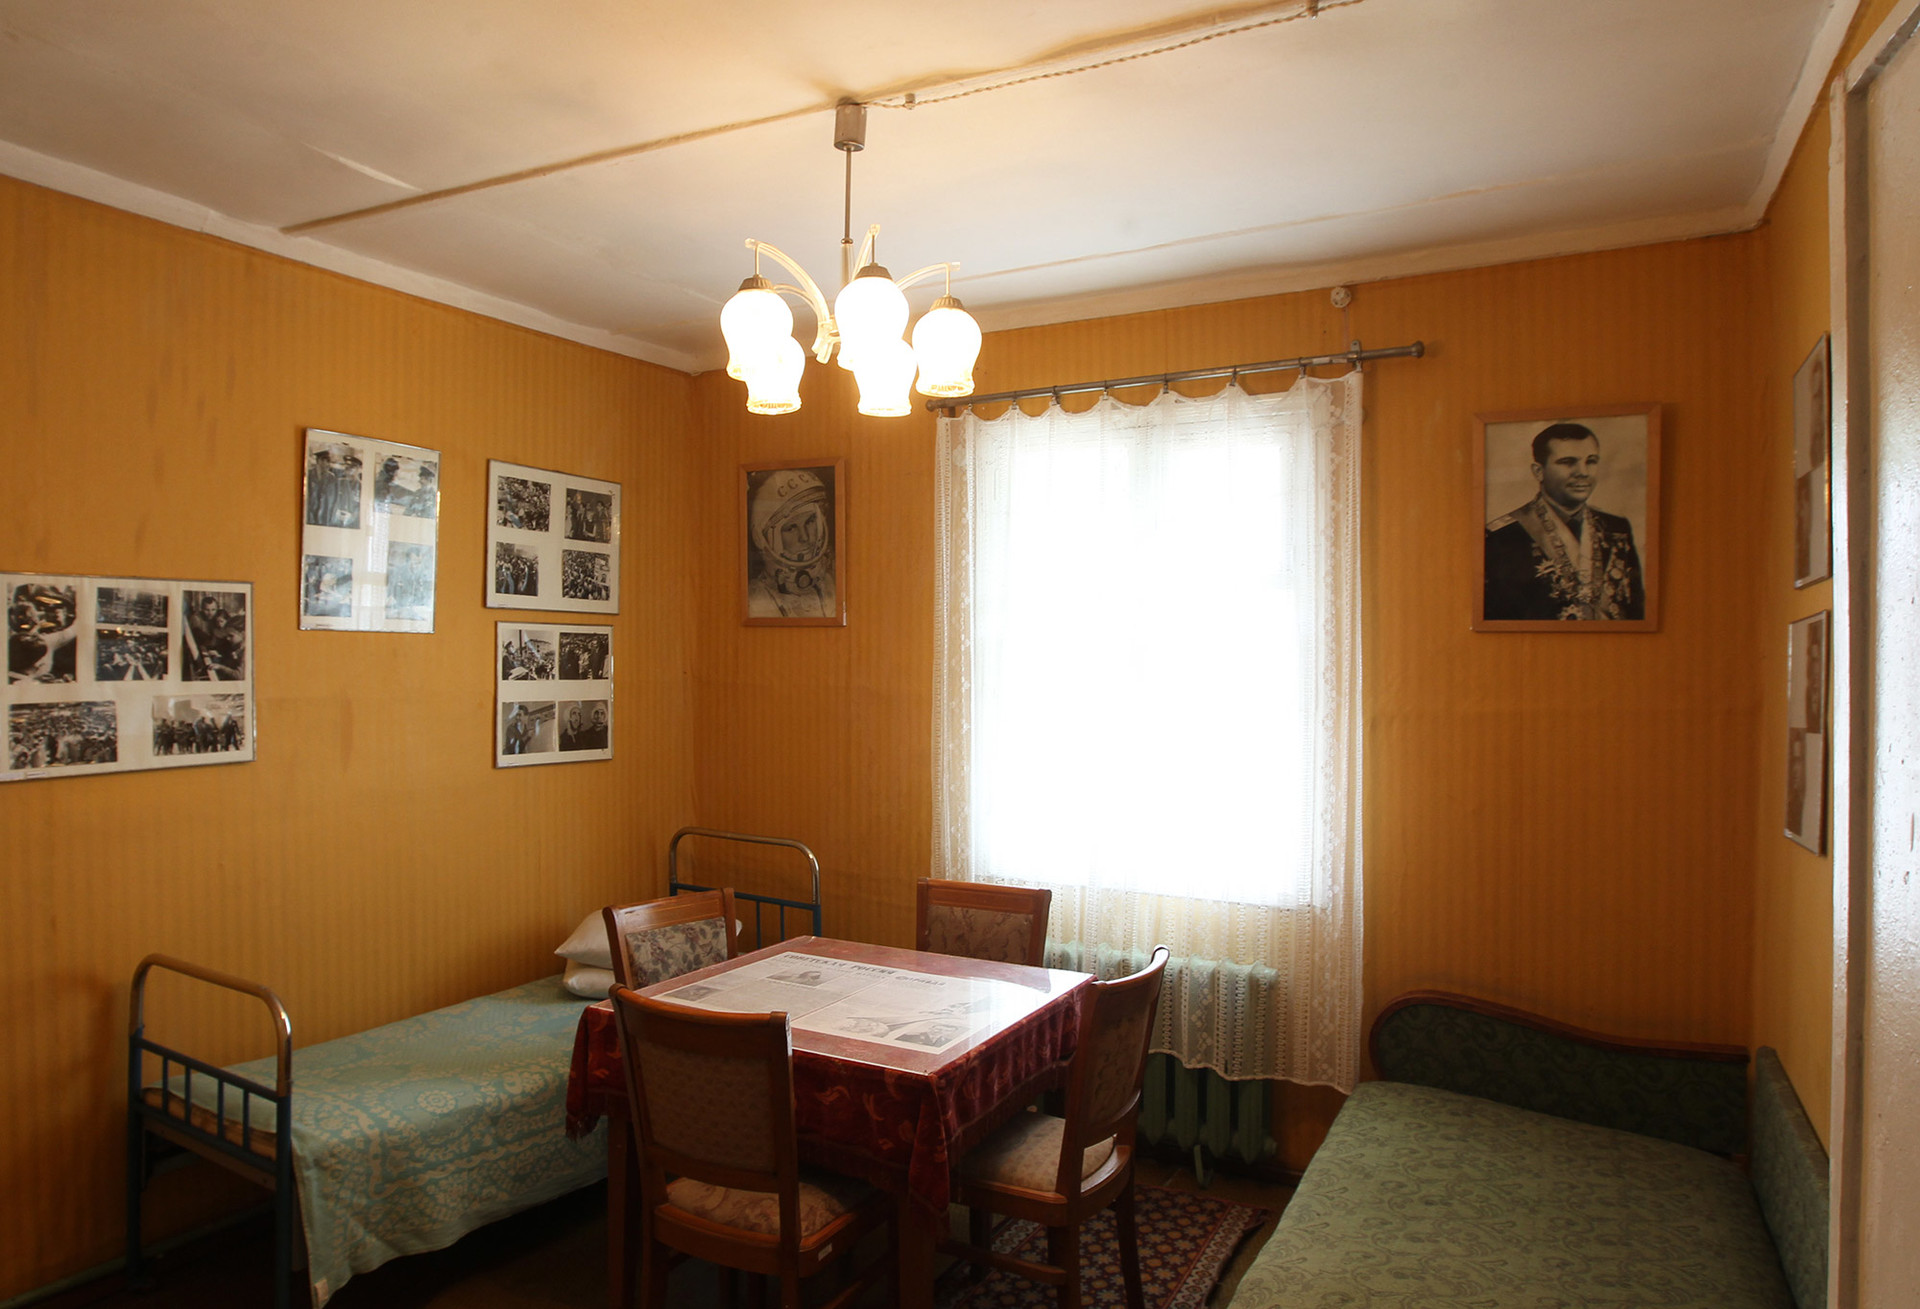 Der Innenraum des Hauses von Juri Gagarin auf dem Baikonur-Kosmodrom